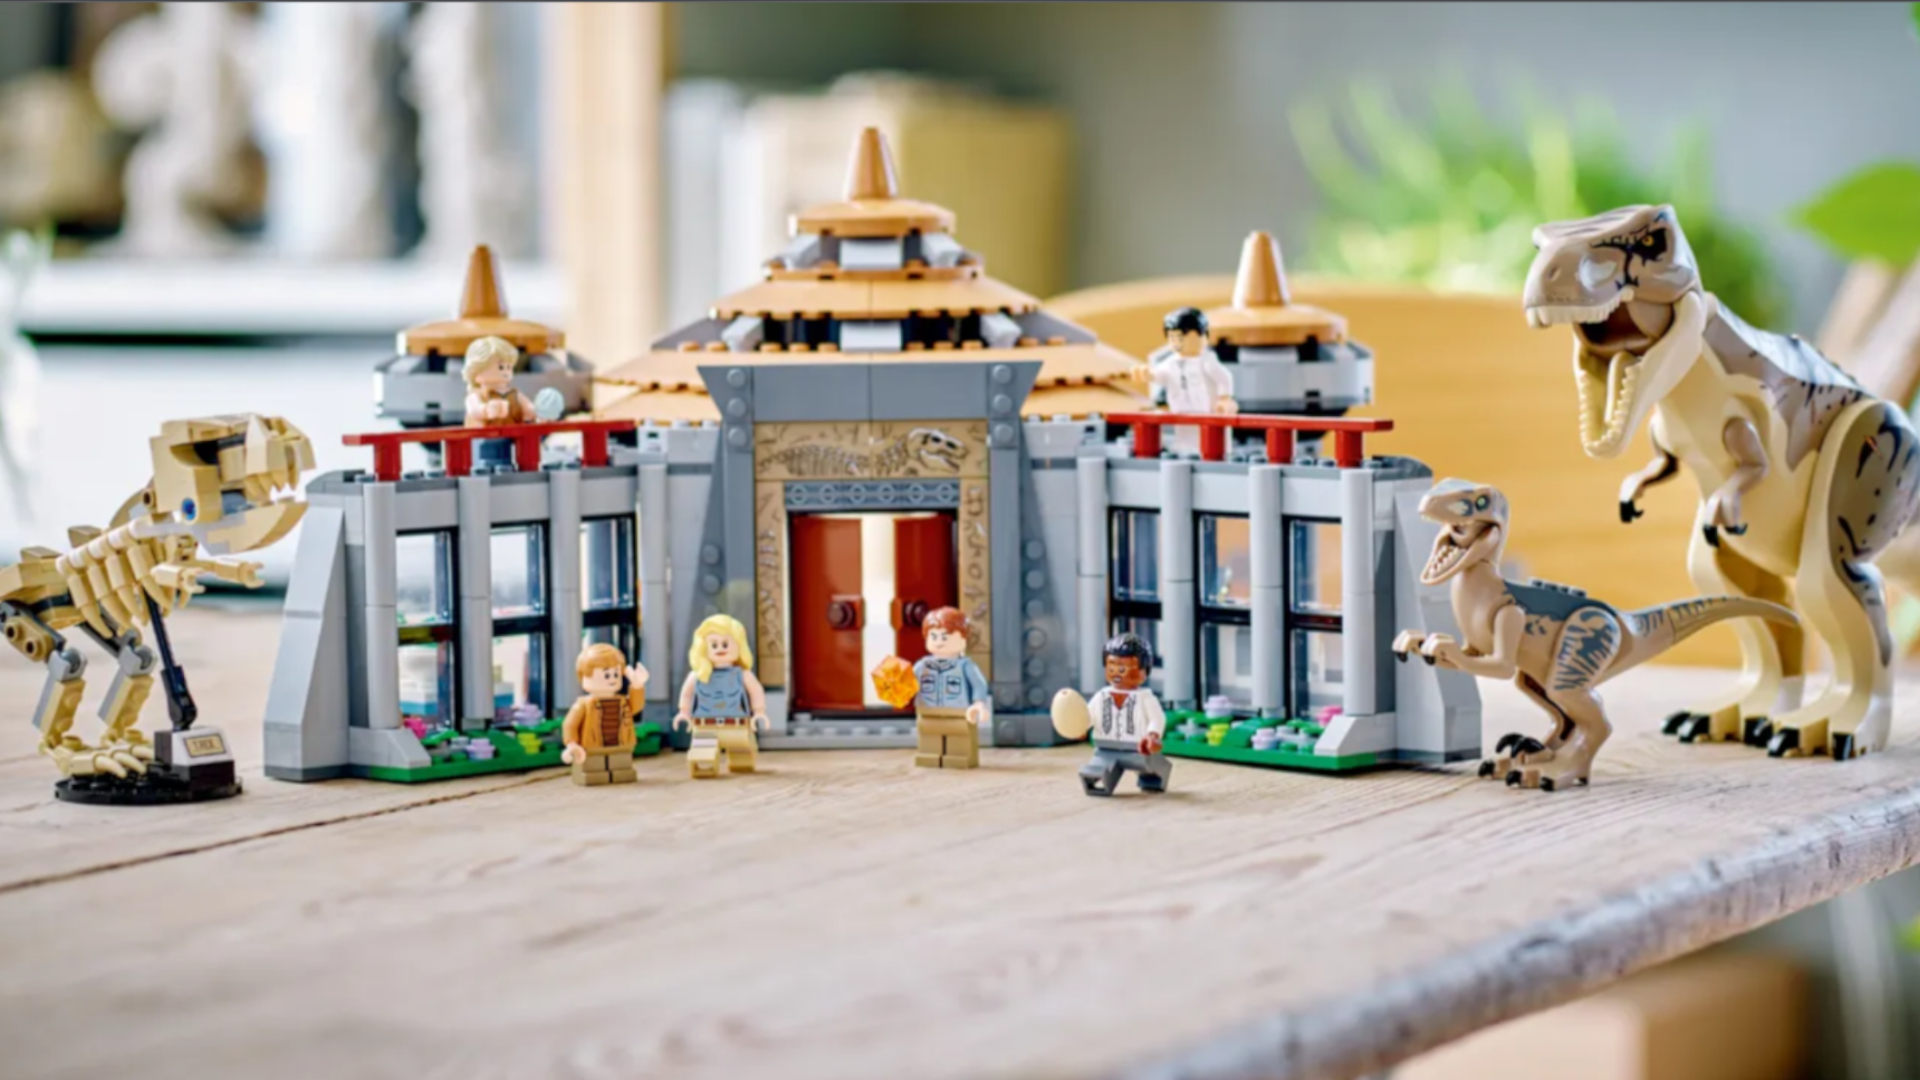 LEGO Jurassic World ganha novo trailer e data de lançamento